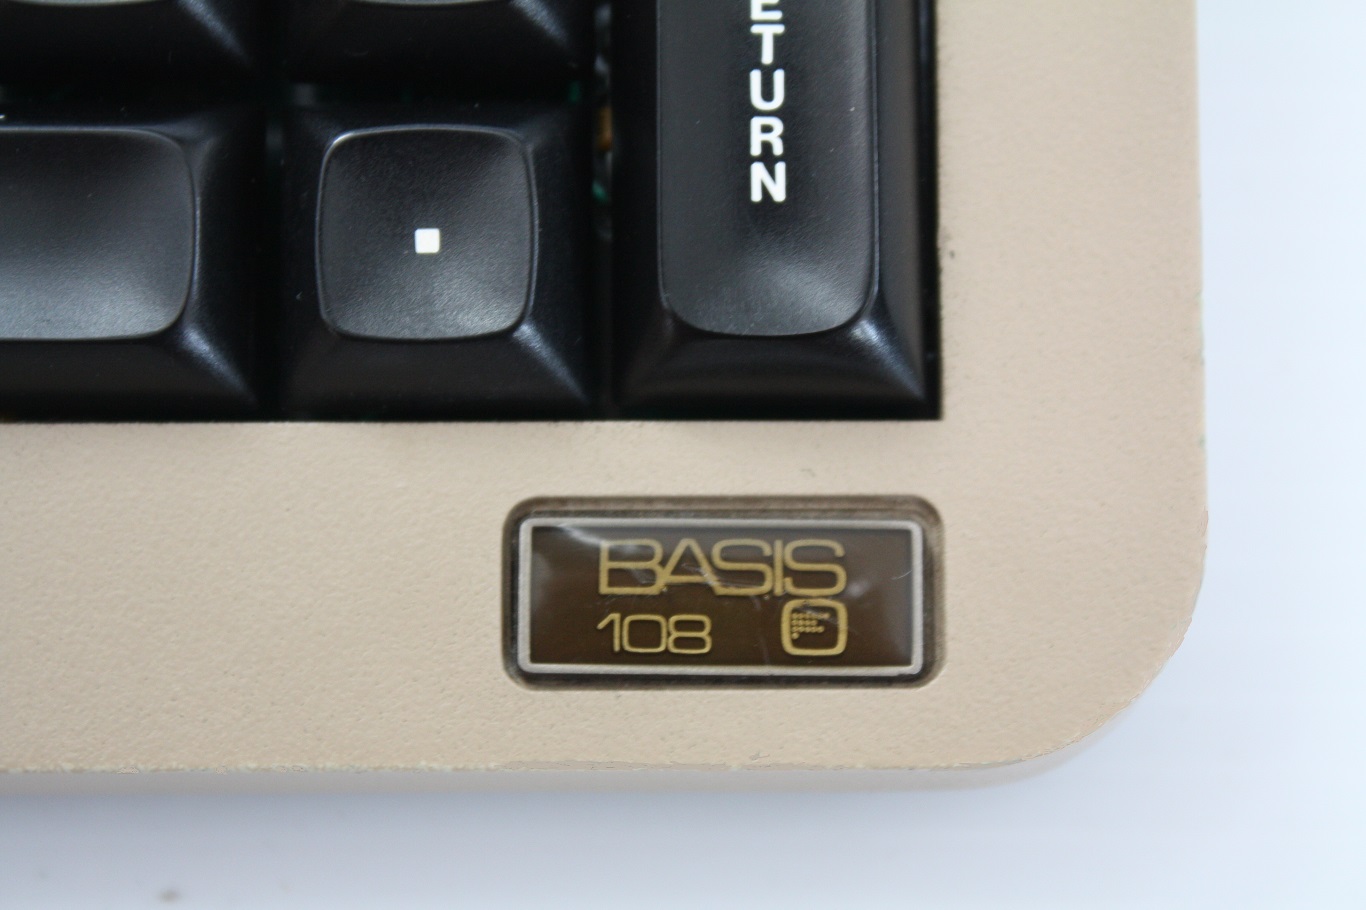 Basis 108 - keyboard logo